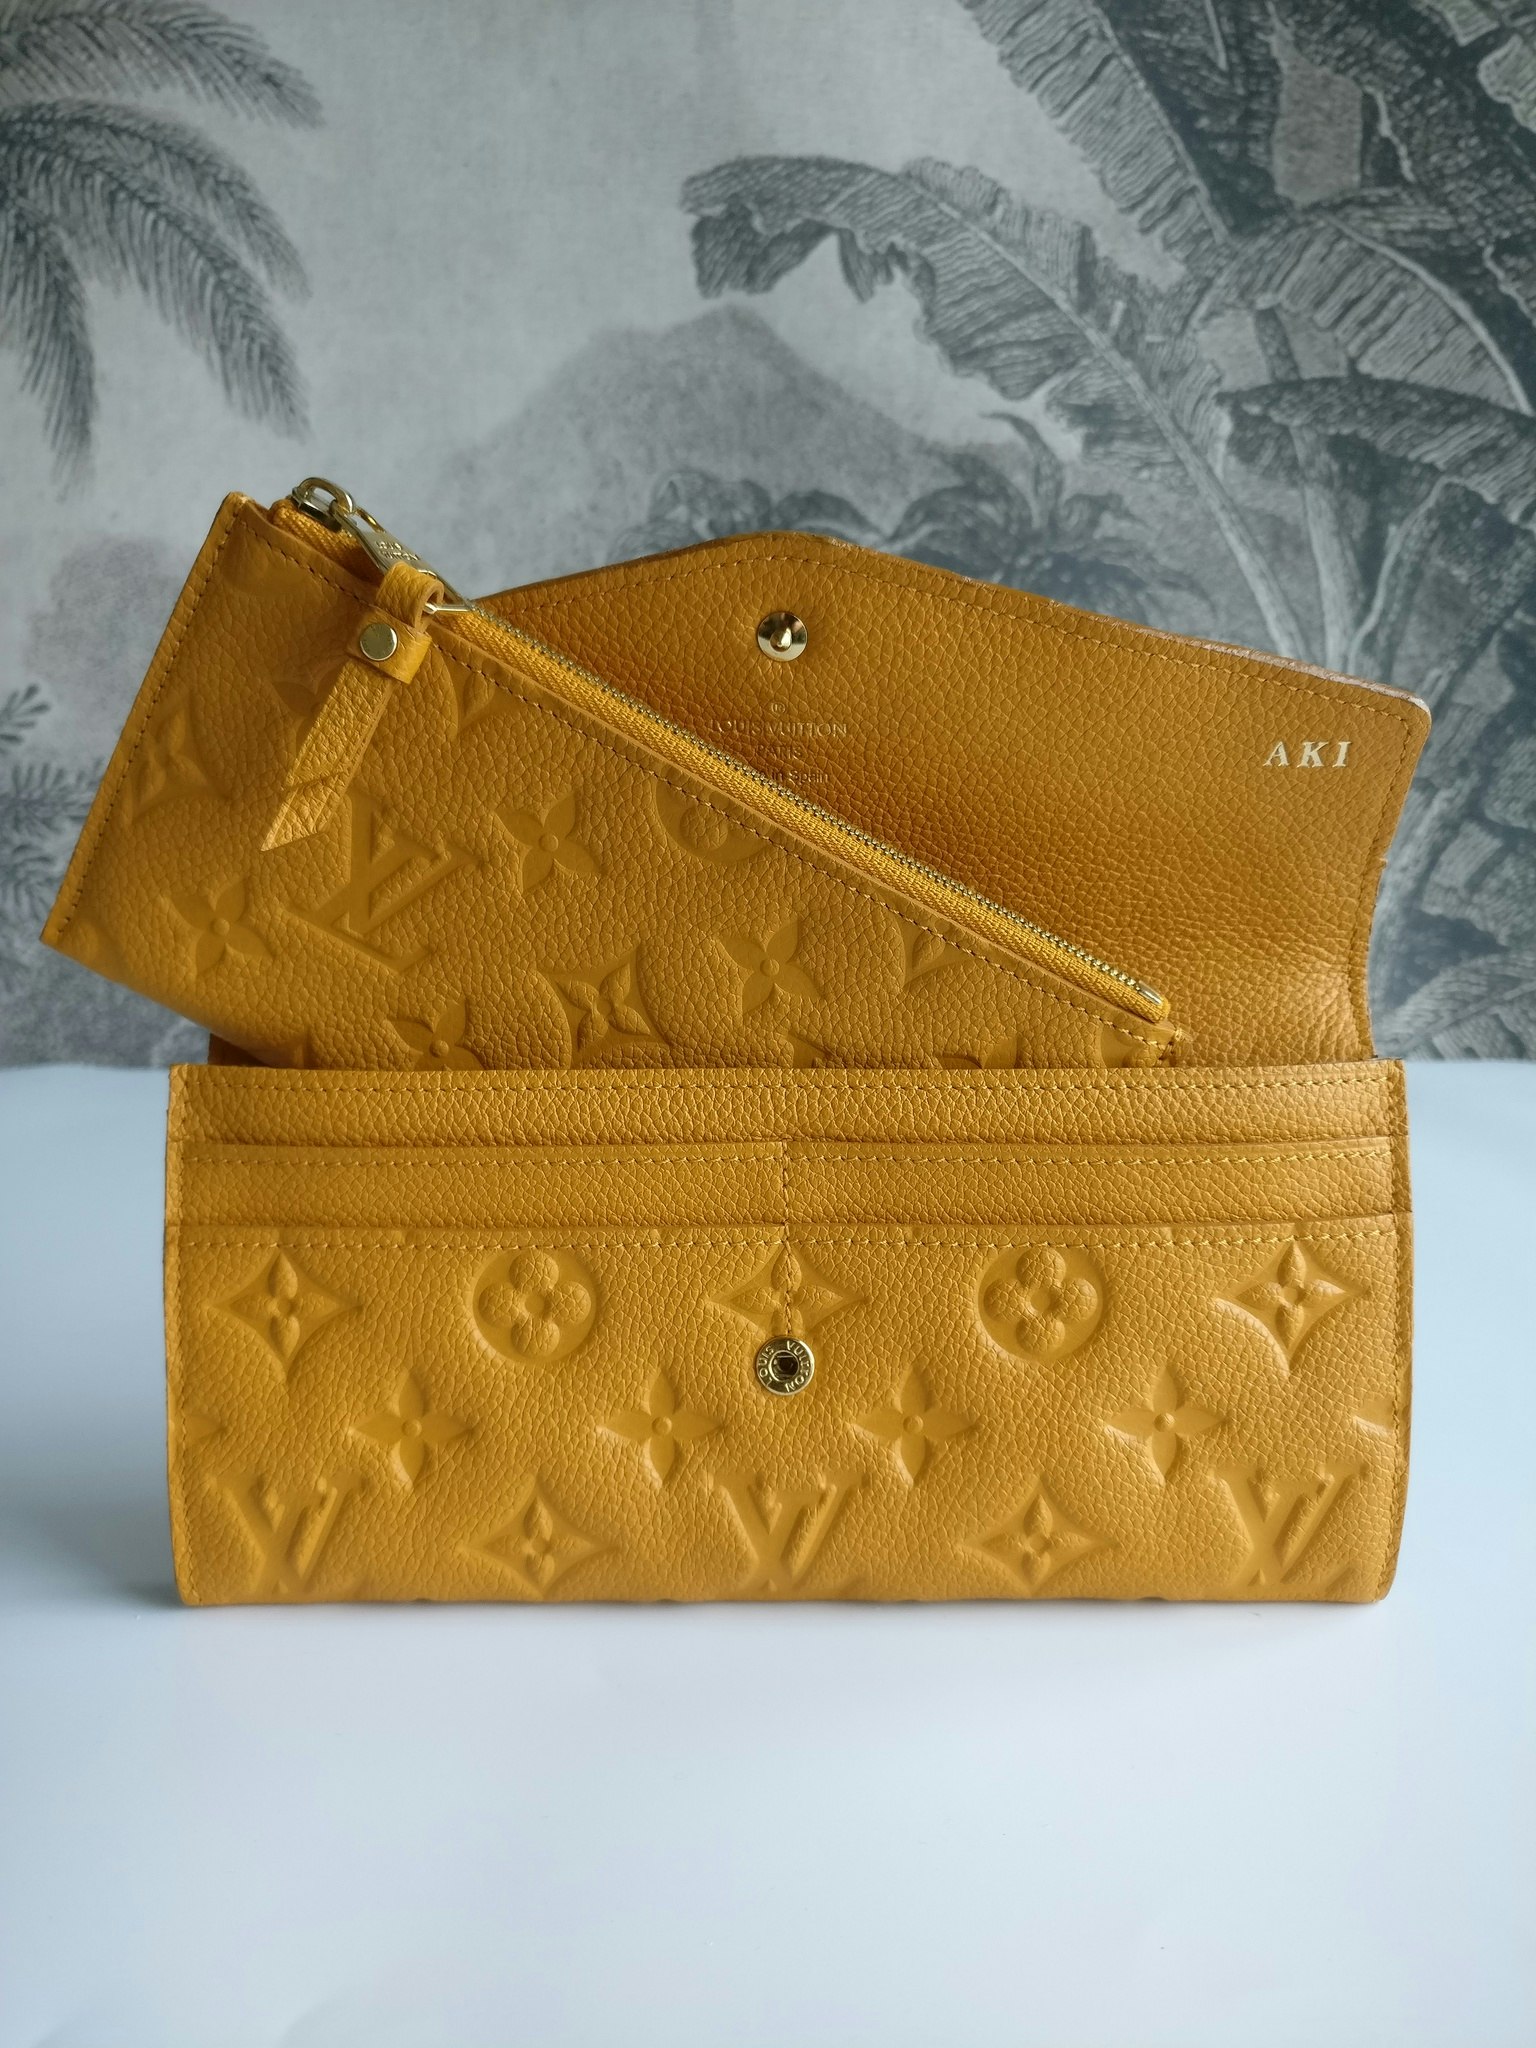 Louis Vuitton Empreinte Portefeuille Curieuse wallet - Good or Bag